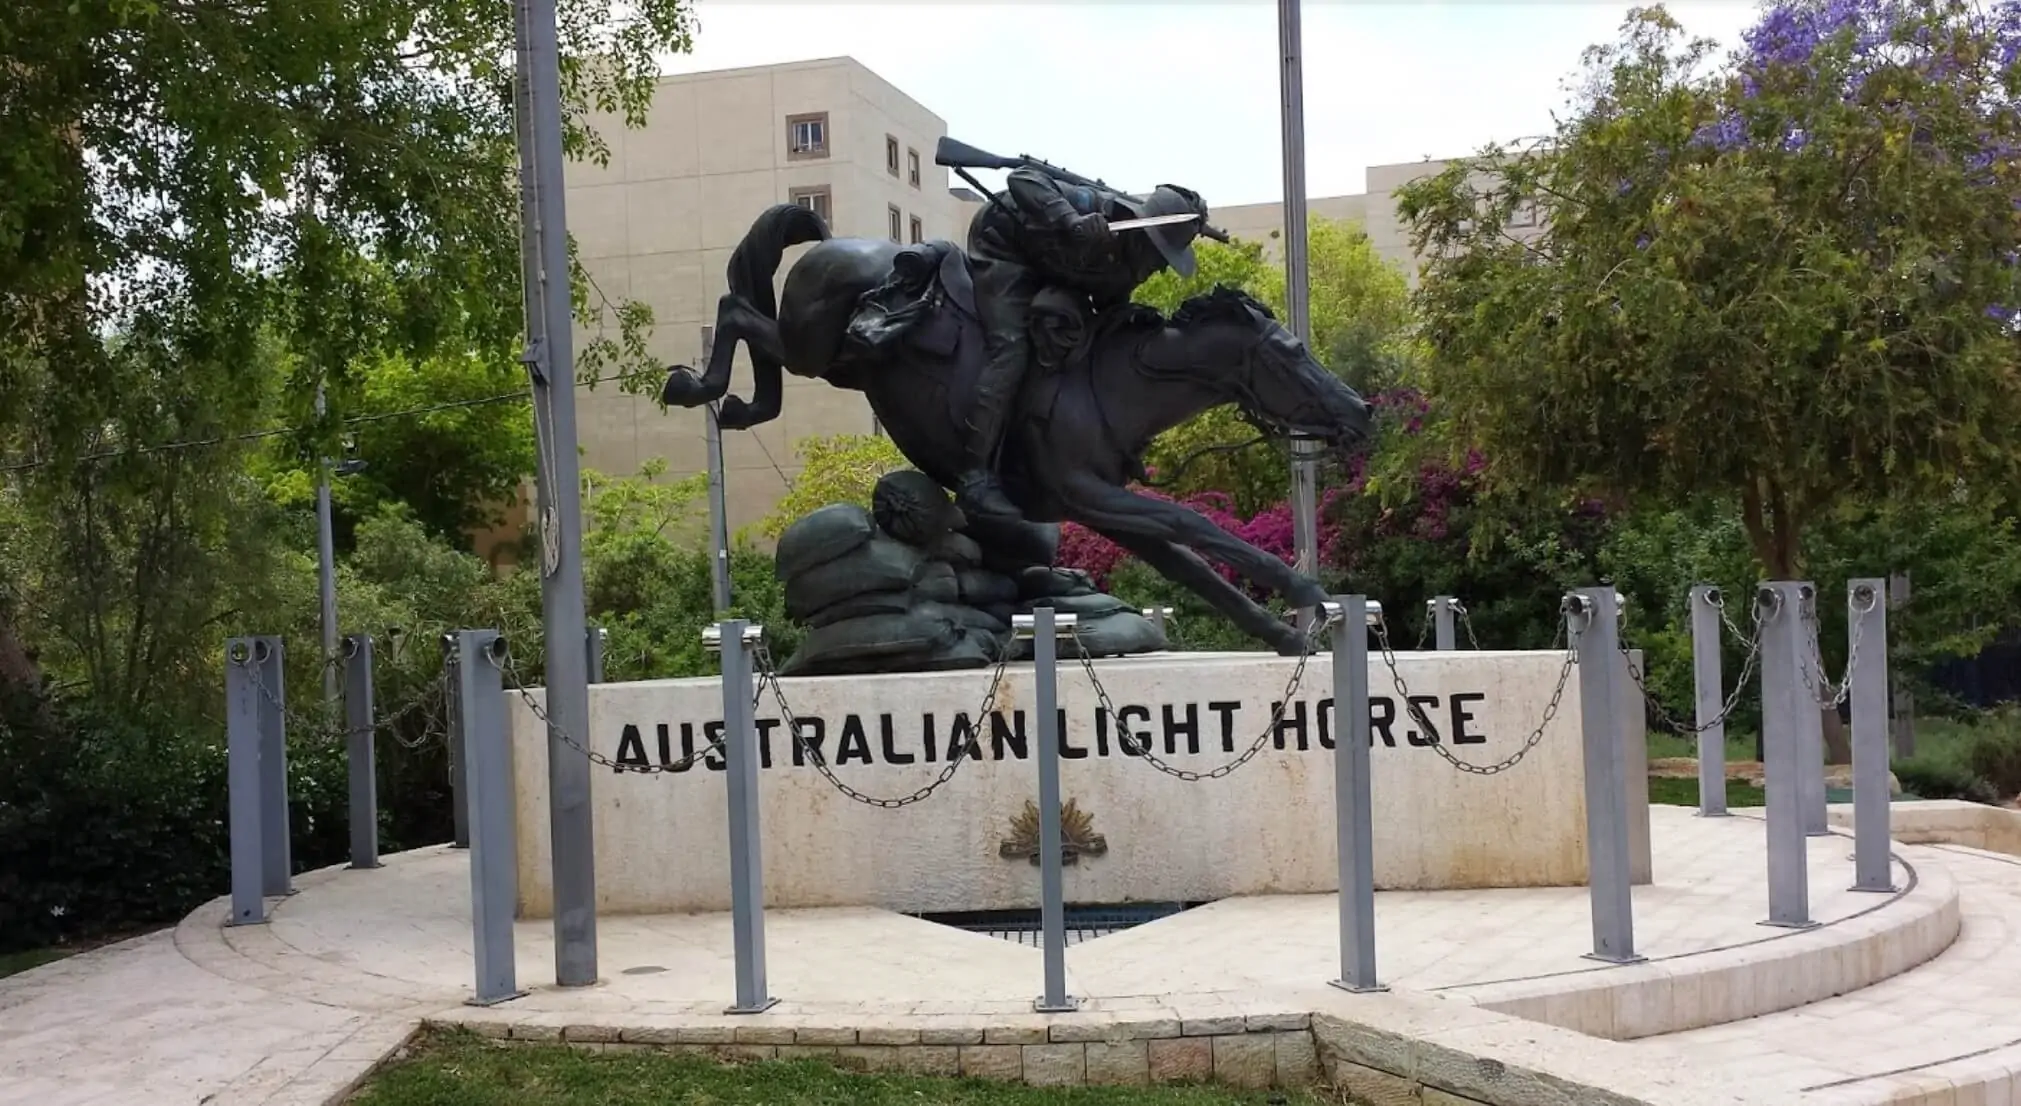 Australian Light Horse, Australian Soldier Park à Be'er-Sheva